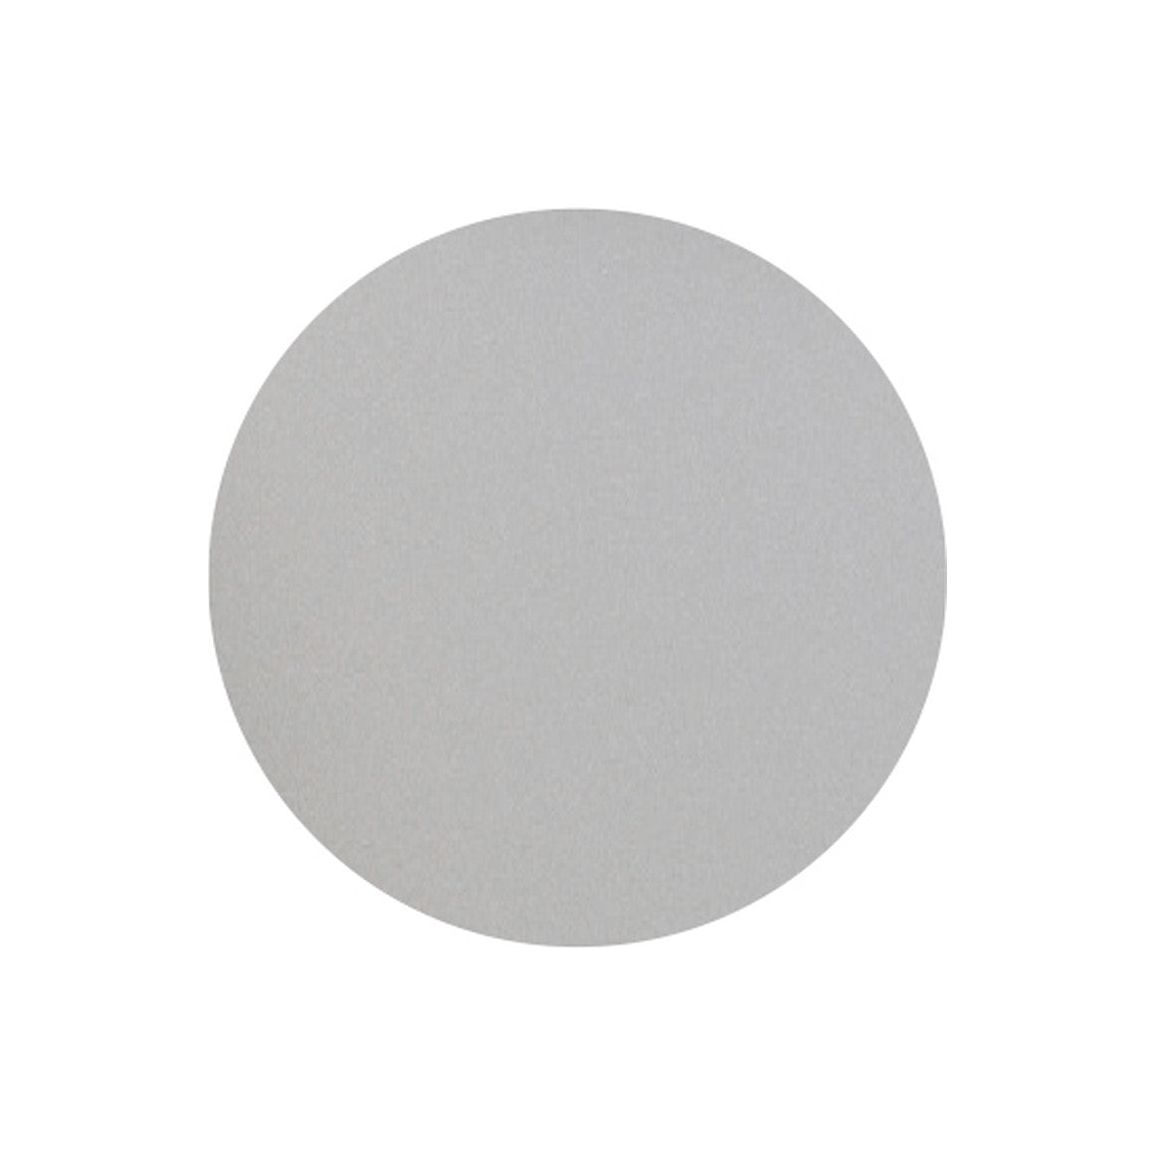 Cedar 200mm Toilet Roll Holder - Light Grey Gloss